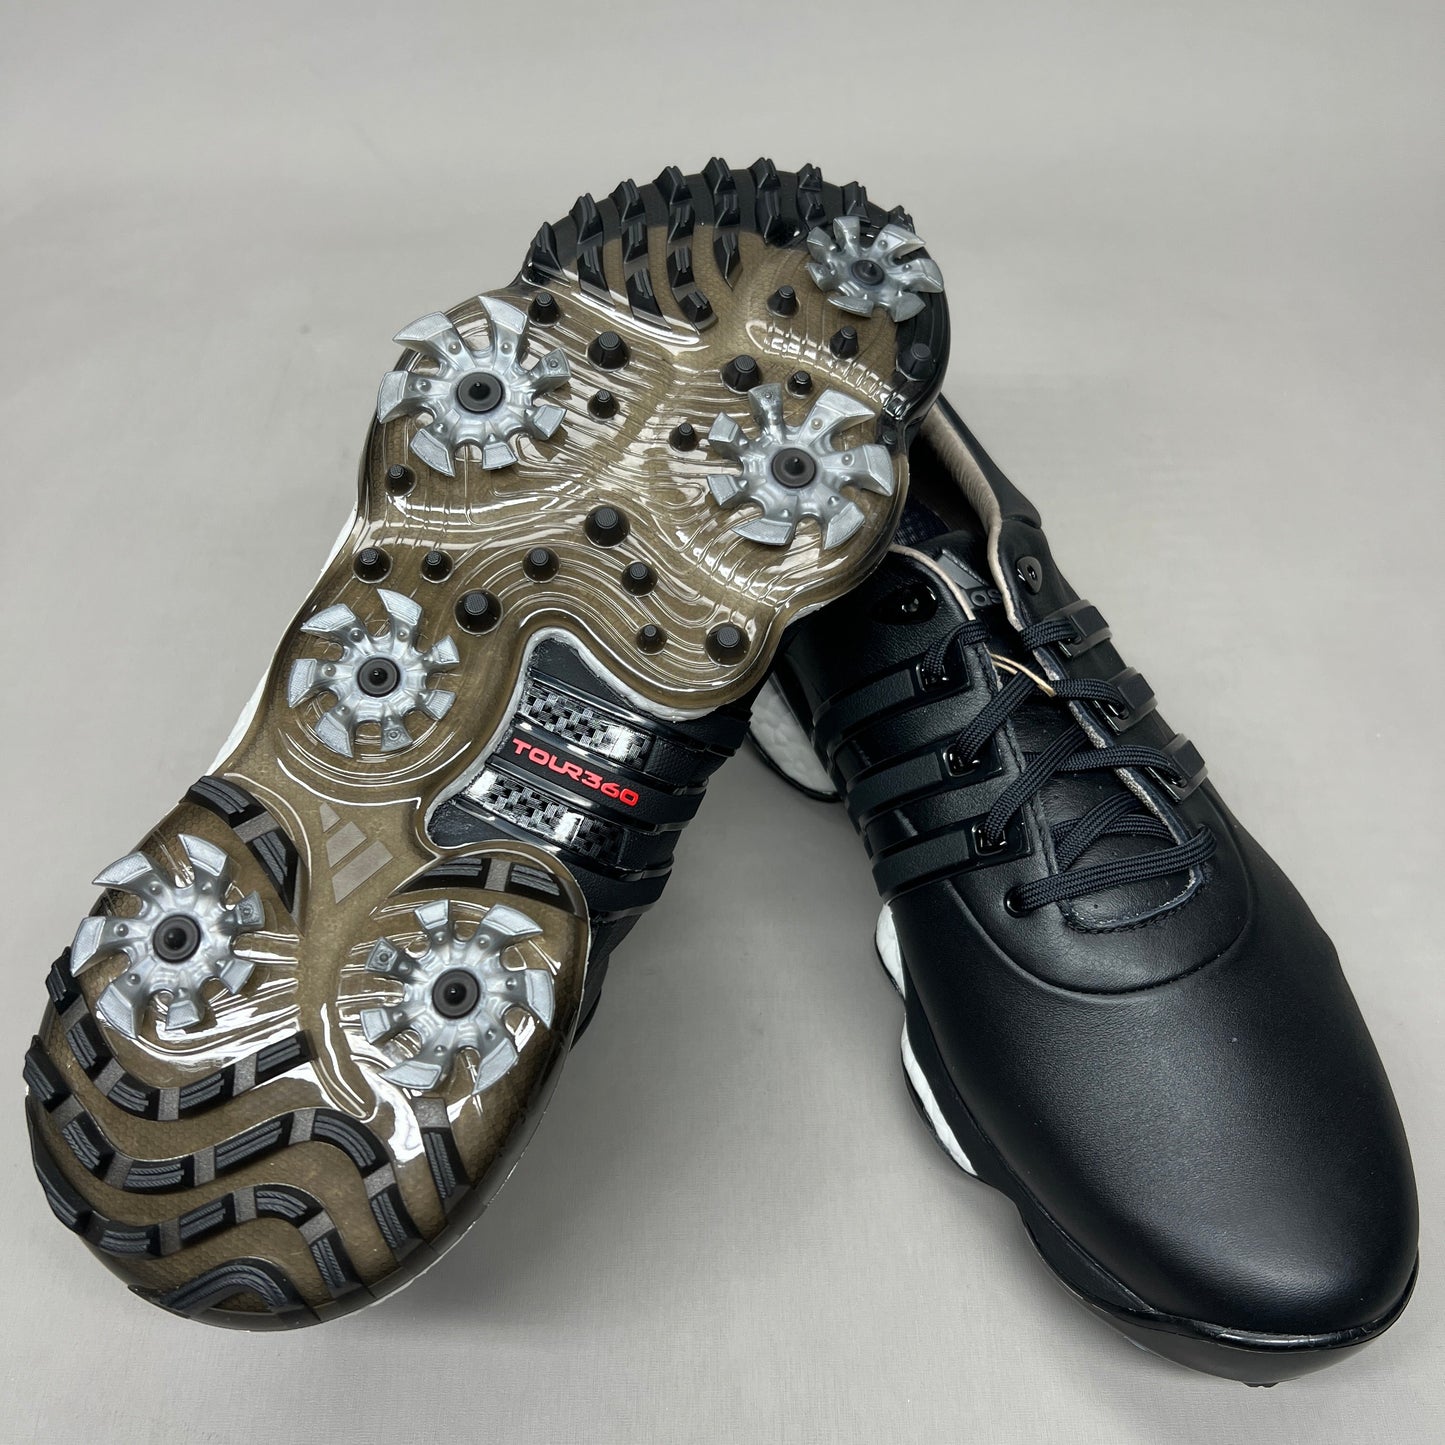 ADIDAS Golf Shoes TOUR360 22 Leather Men's Sz 14 Black / Iron Metallic GZ3158 (New)